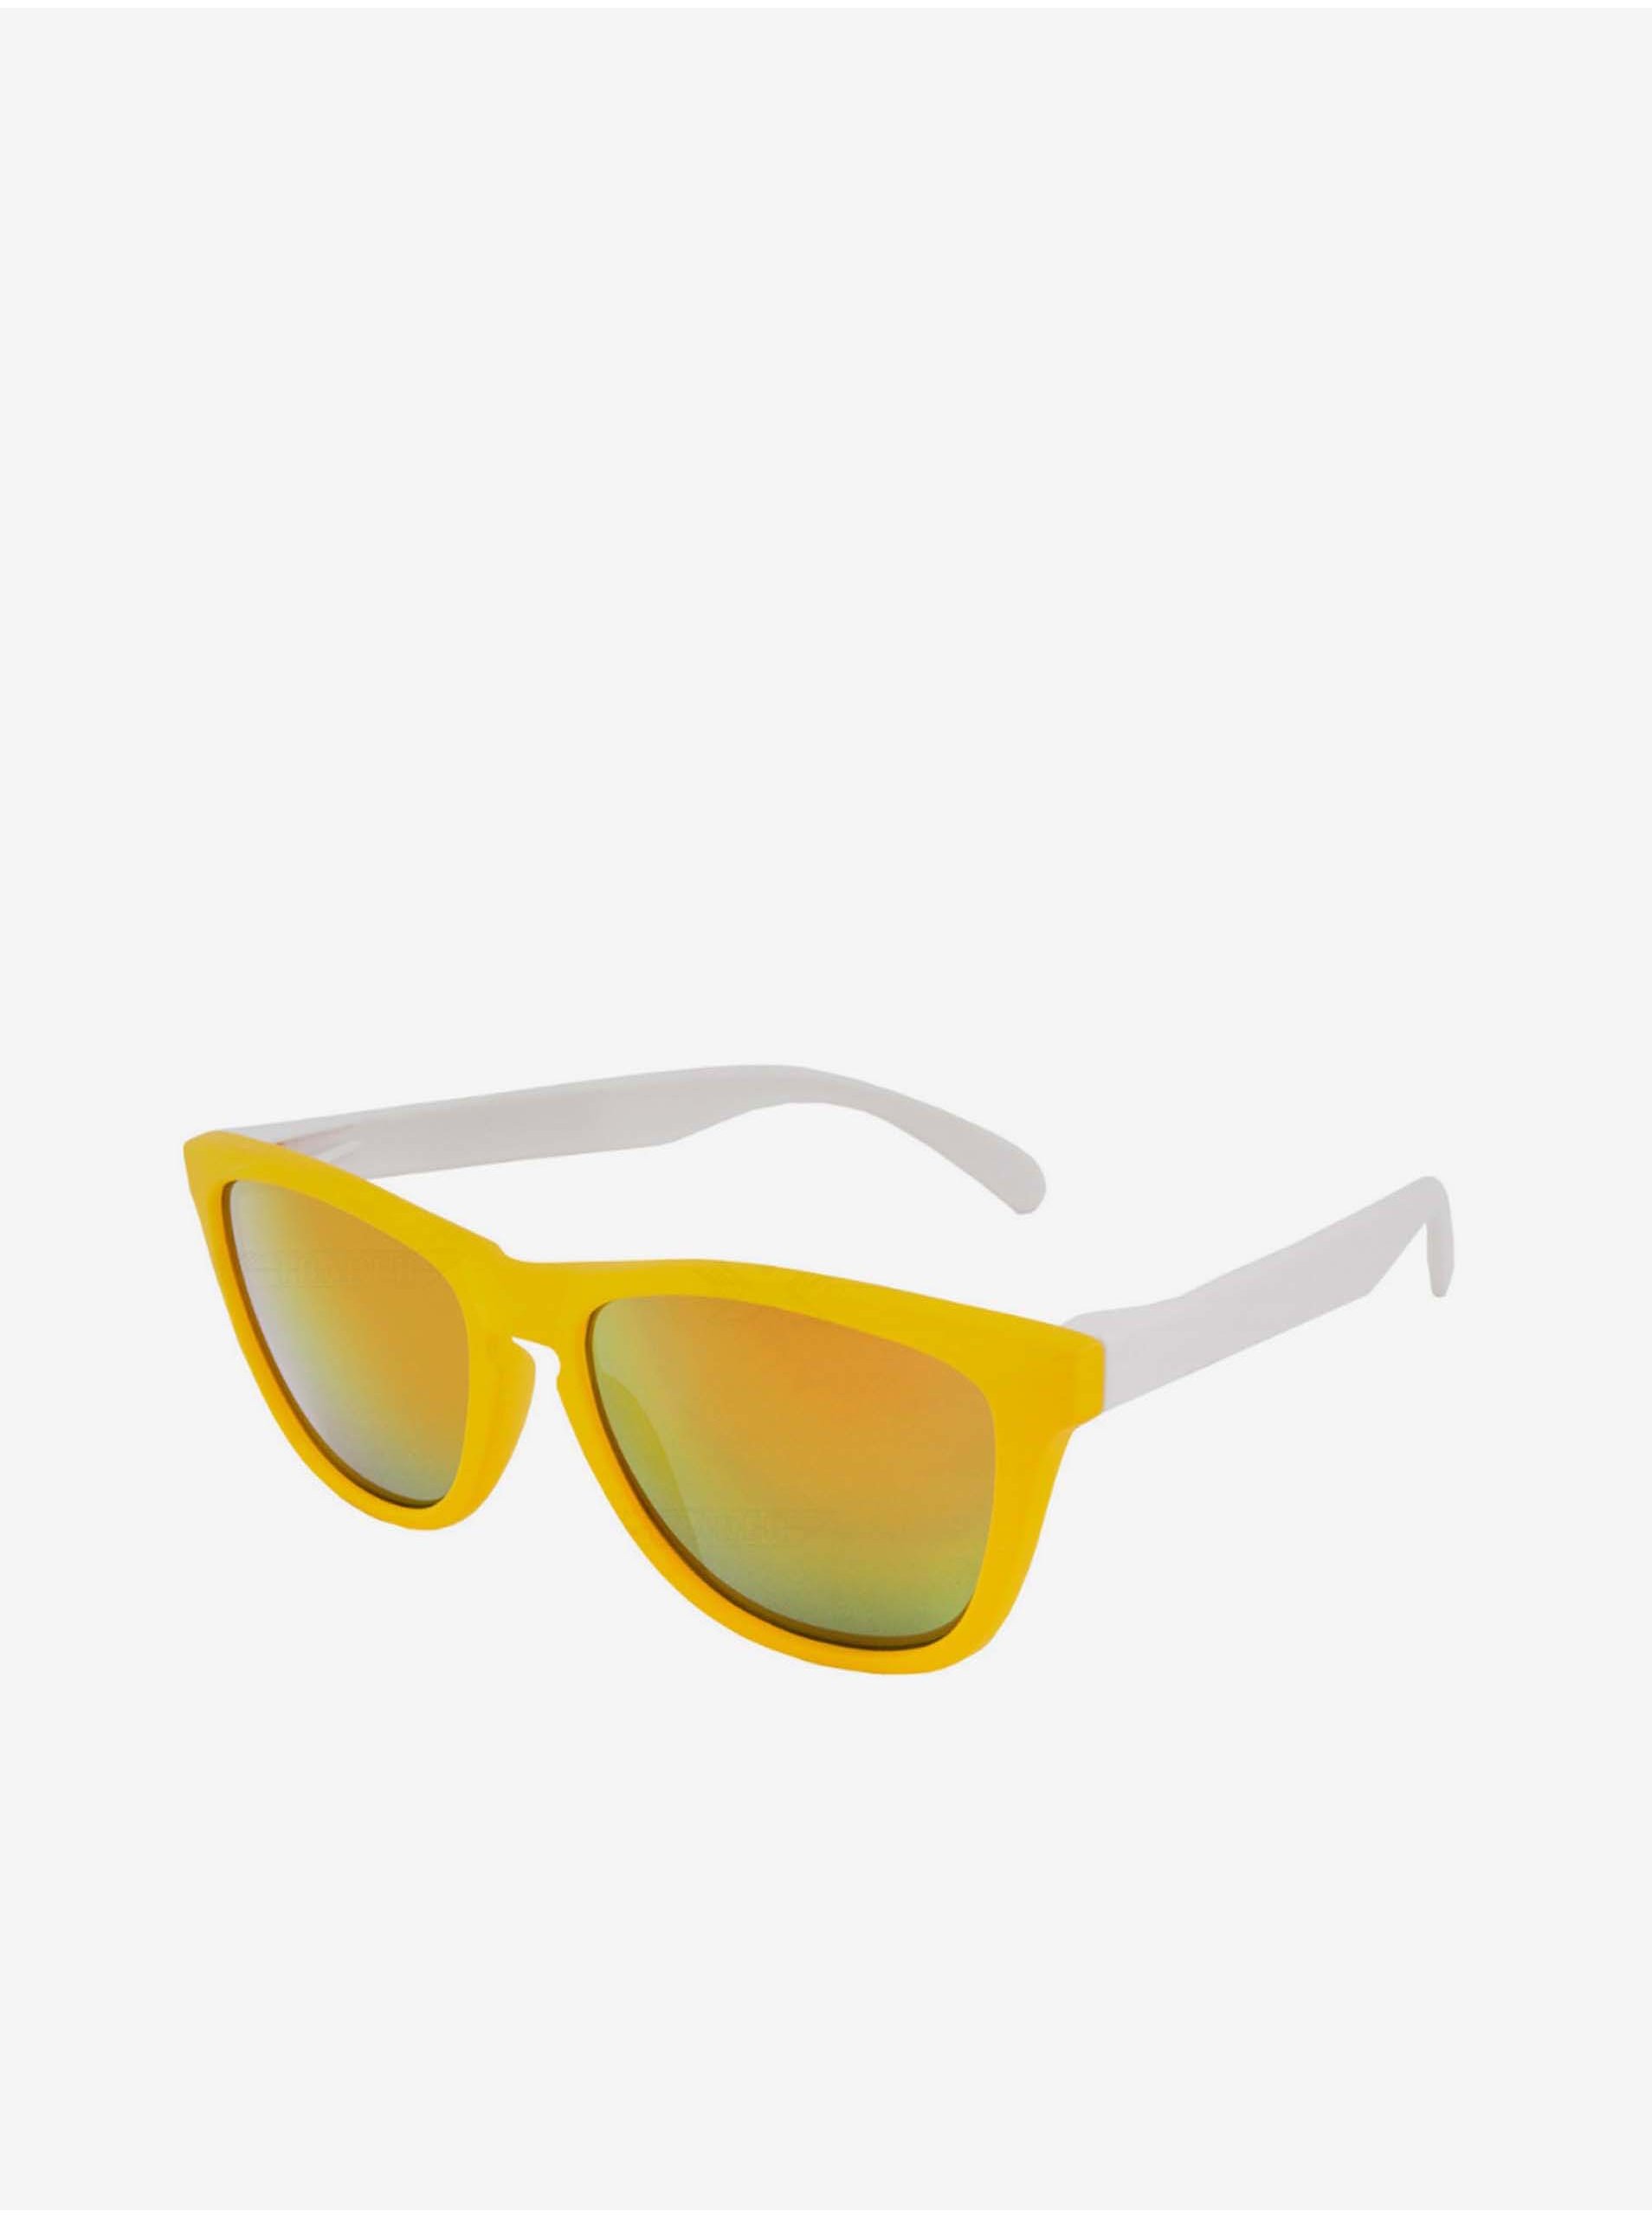 Levně VeyRey Sluneční brýle Nerd Cool žluto-bílé